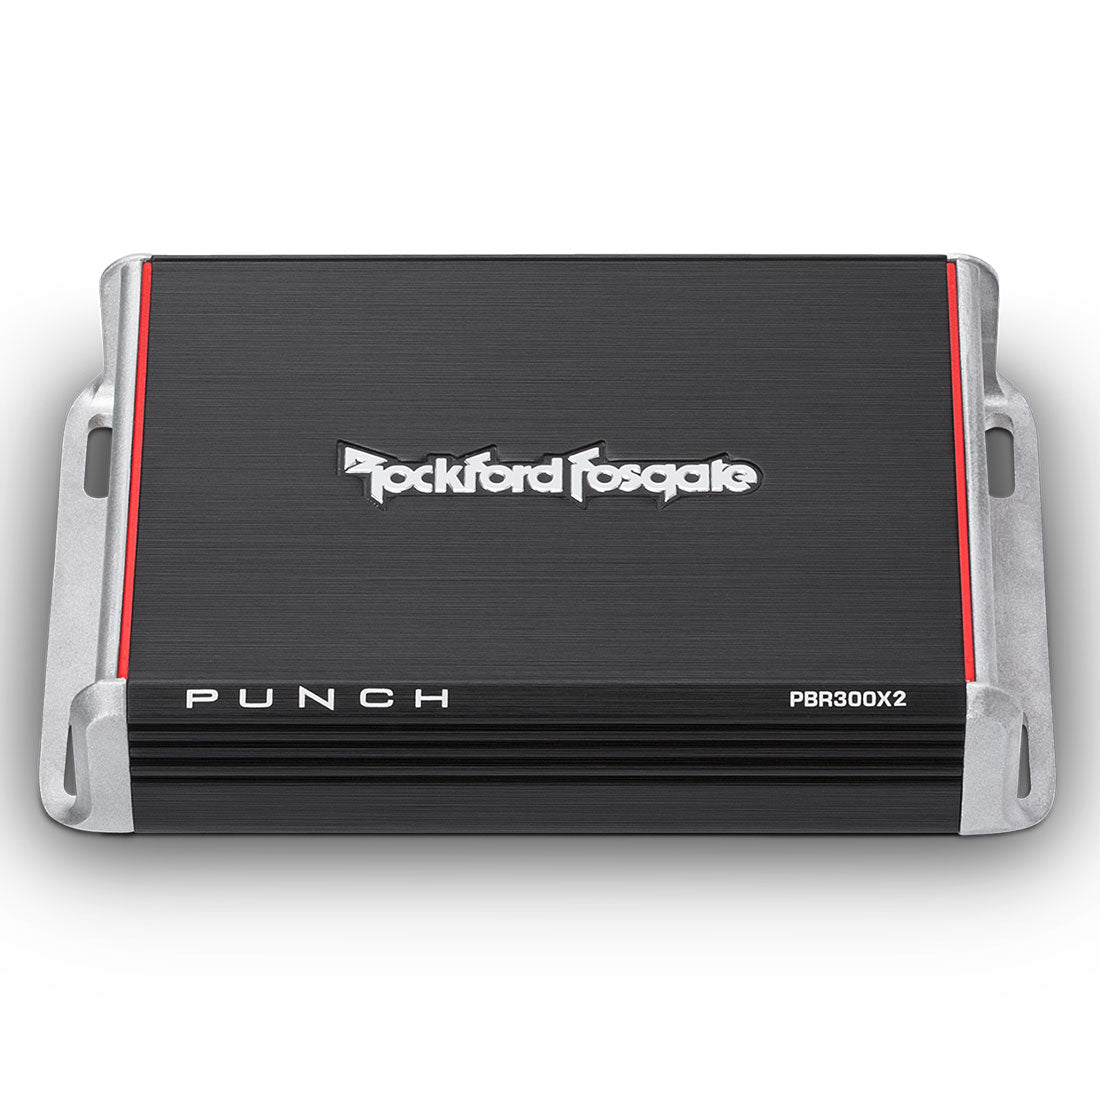 Rockford Fosgate PBR300X2 Punch 4